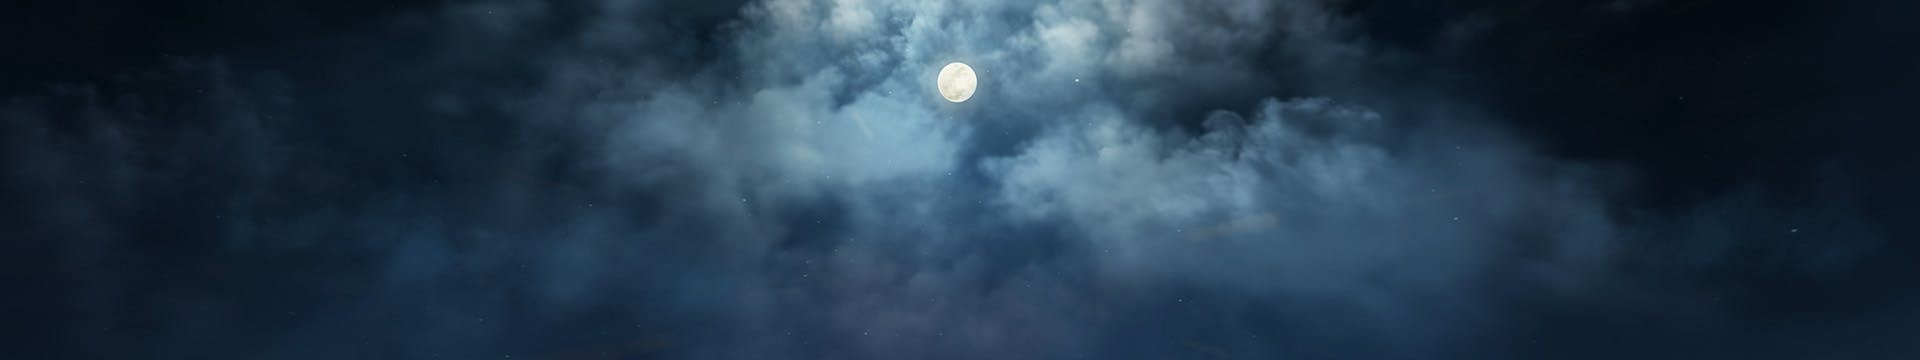 Månen som skiner genom molnen på en mörk natt.